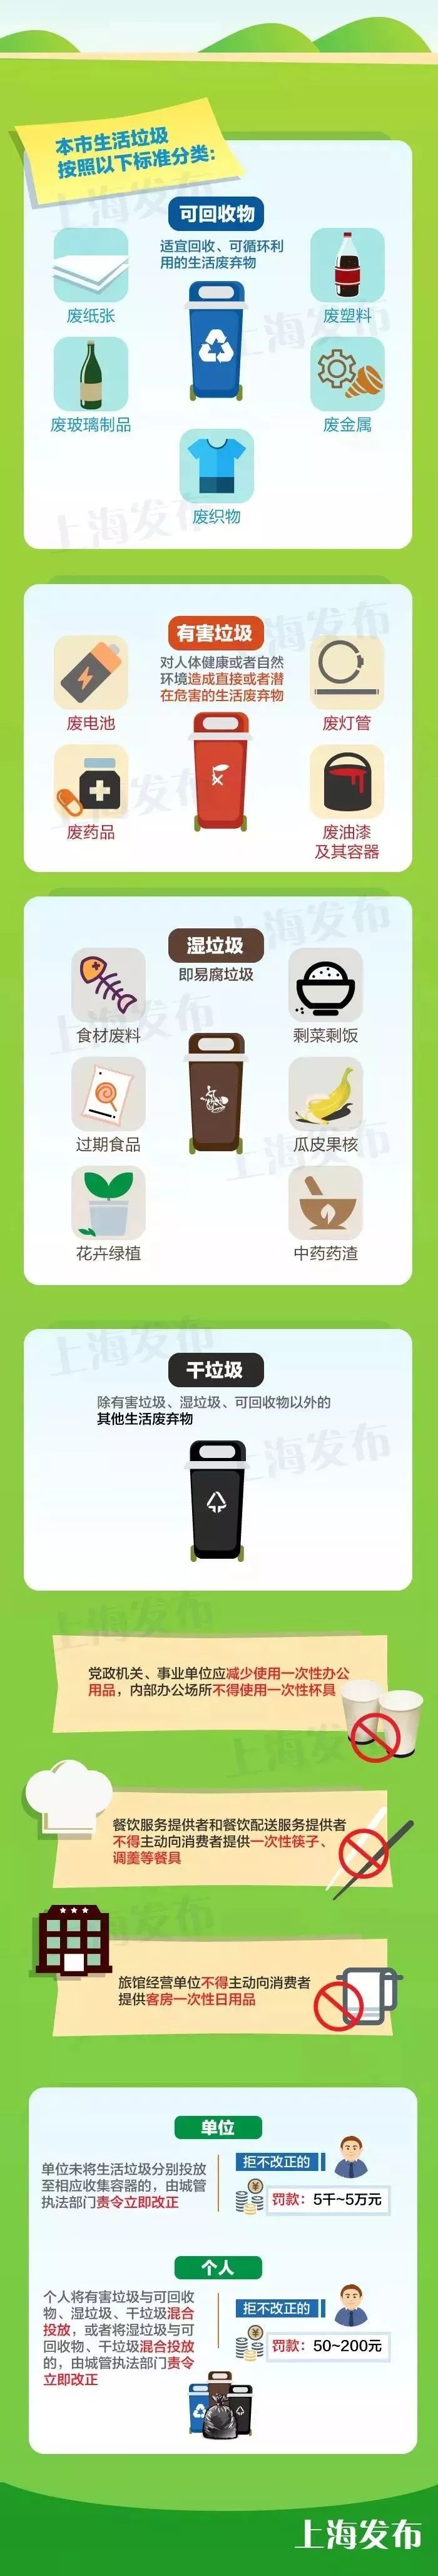 上海垃圾分类桶的颜色 4大垃圾桶的分类的颜色是怎么样的?